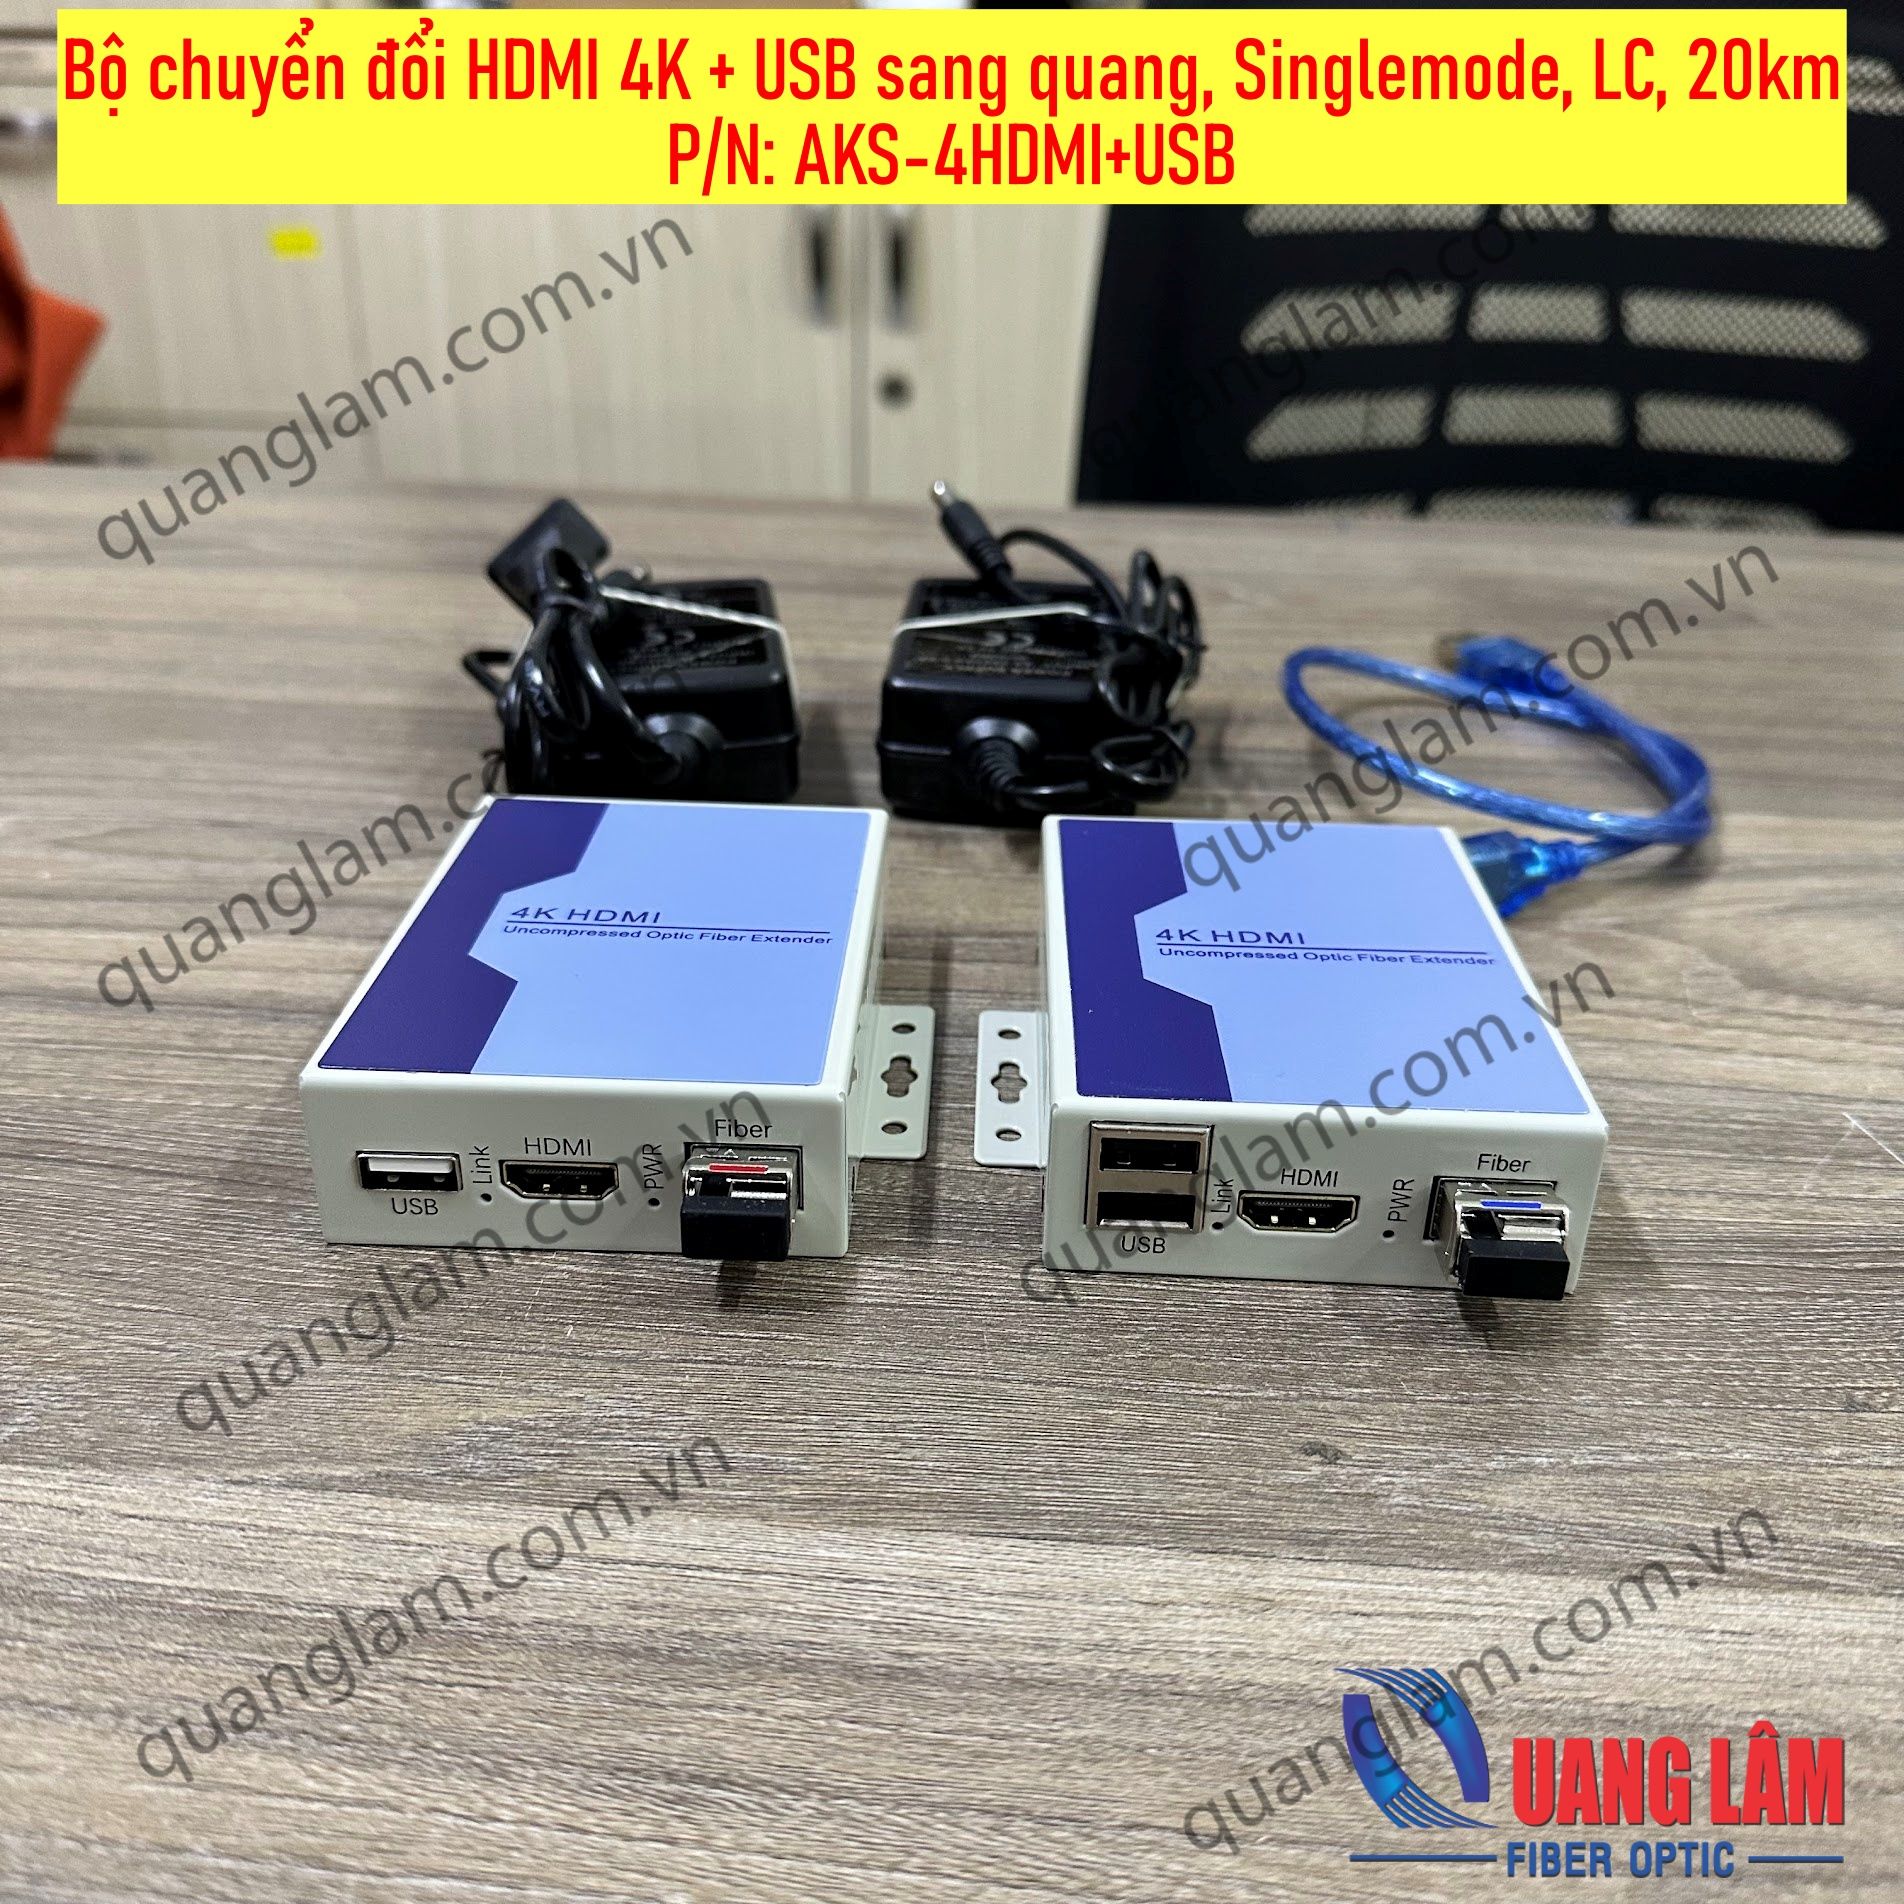 Bộ chuyển đổi tín hiệu HDMI 4K+USB sang quang, đơn mốt, LC 10km, P/N: AKS-4HDMI+USB (1 cặp)